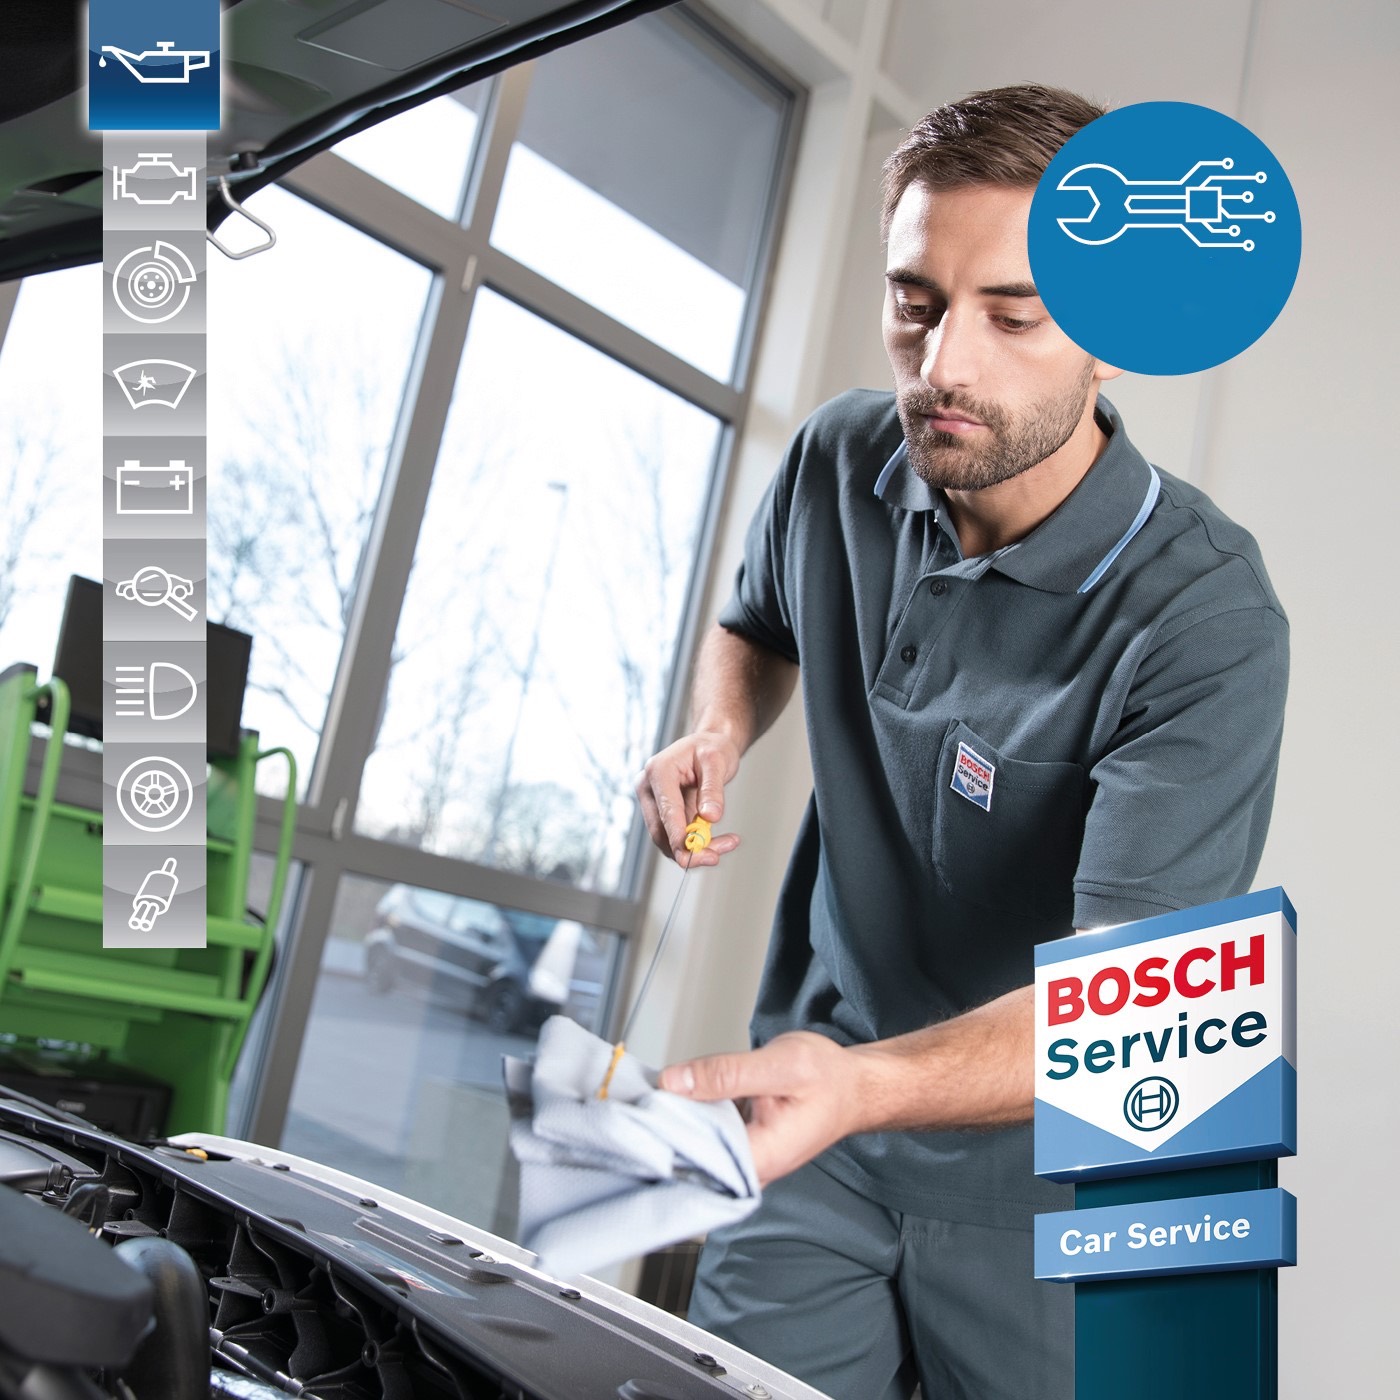 Centro revisioni autorizzato bosch car service a Vimercate | O.P.R.A.